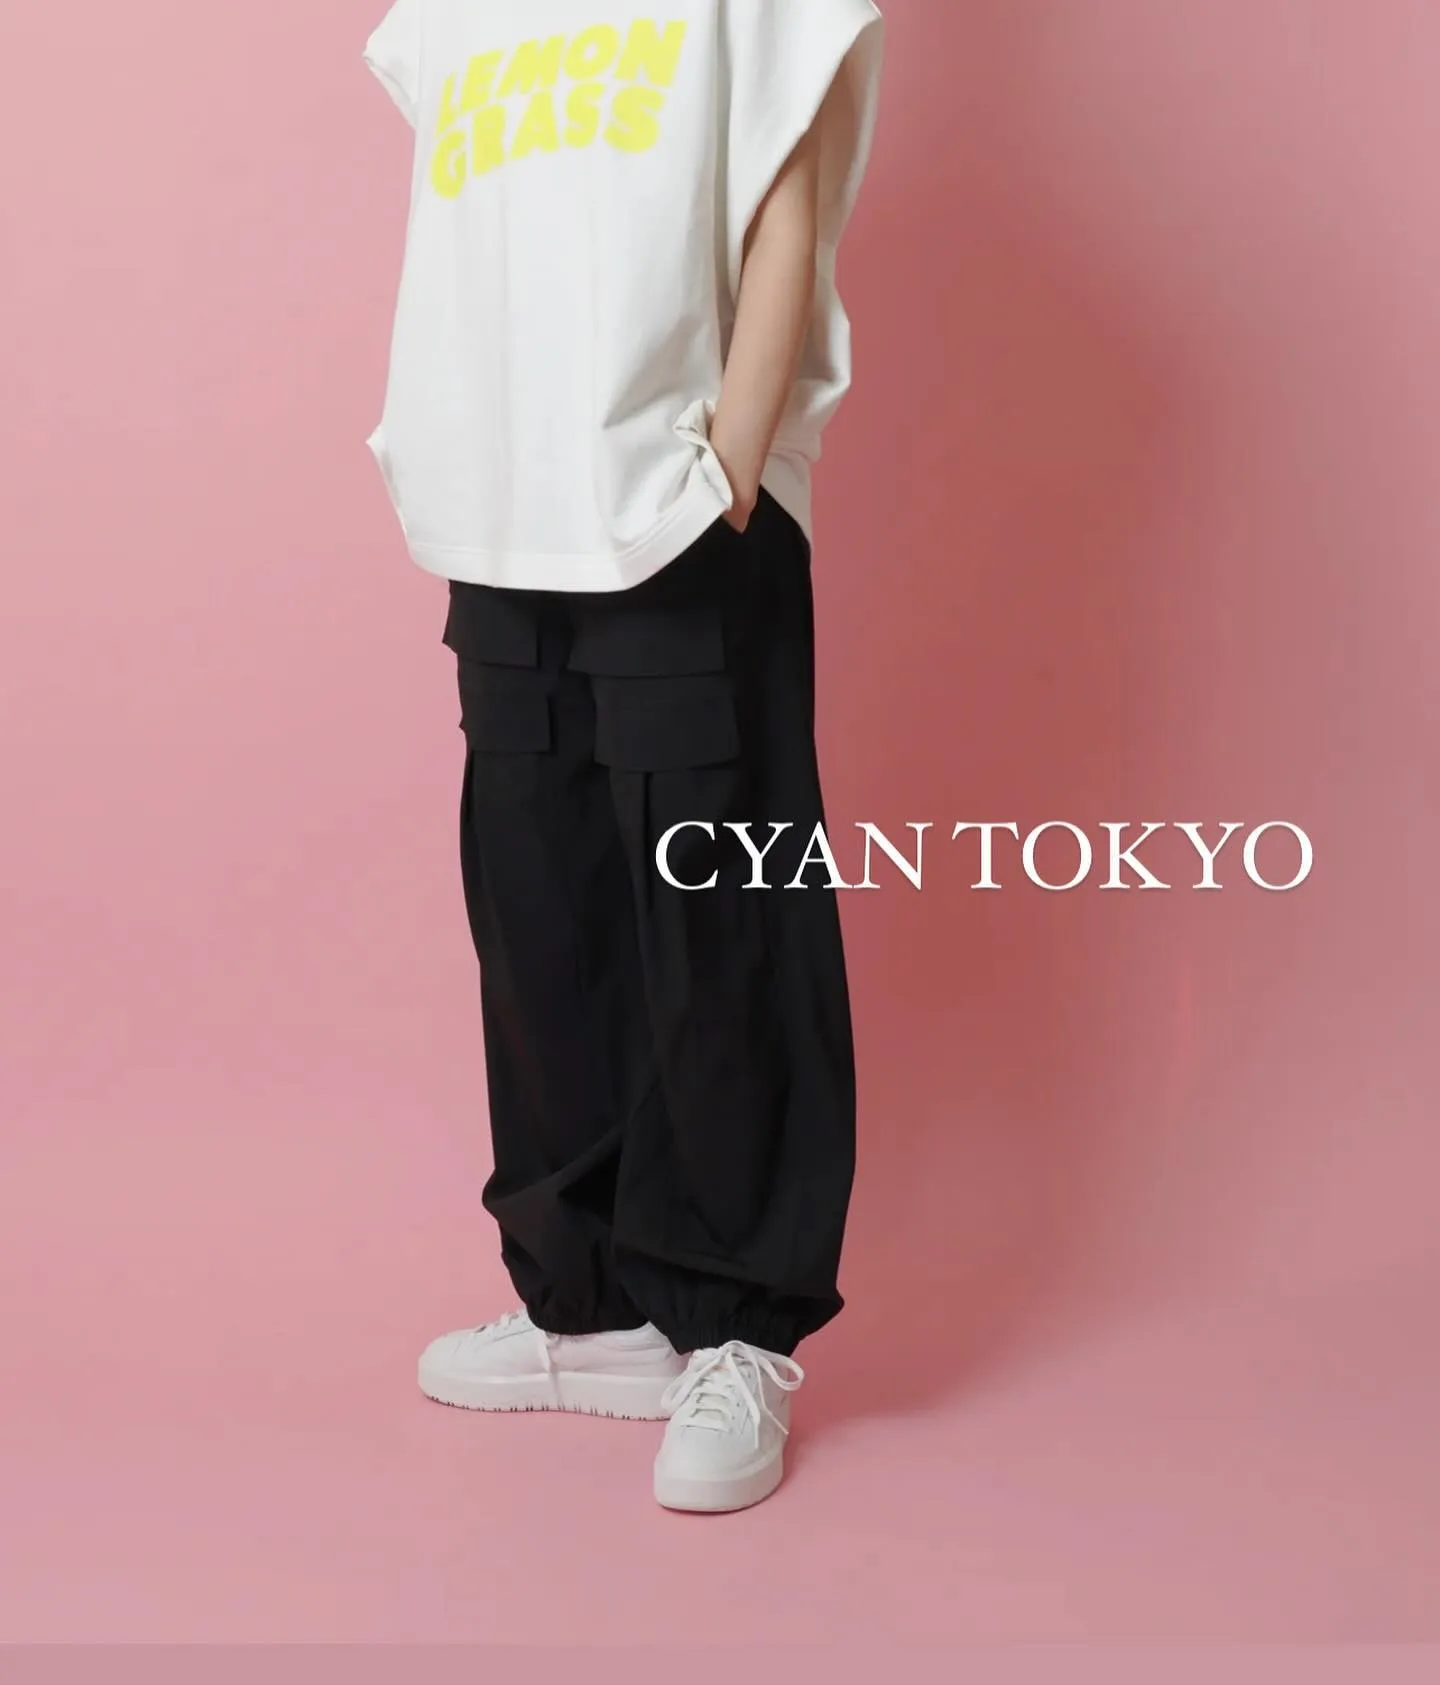 CYAN TOKYO